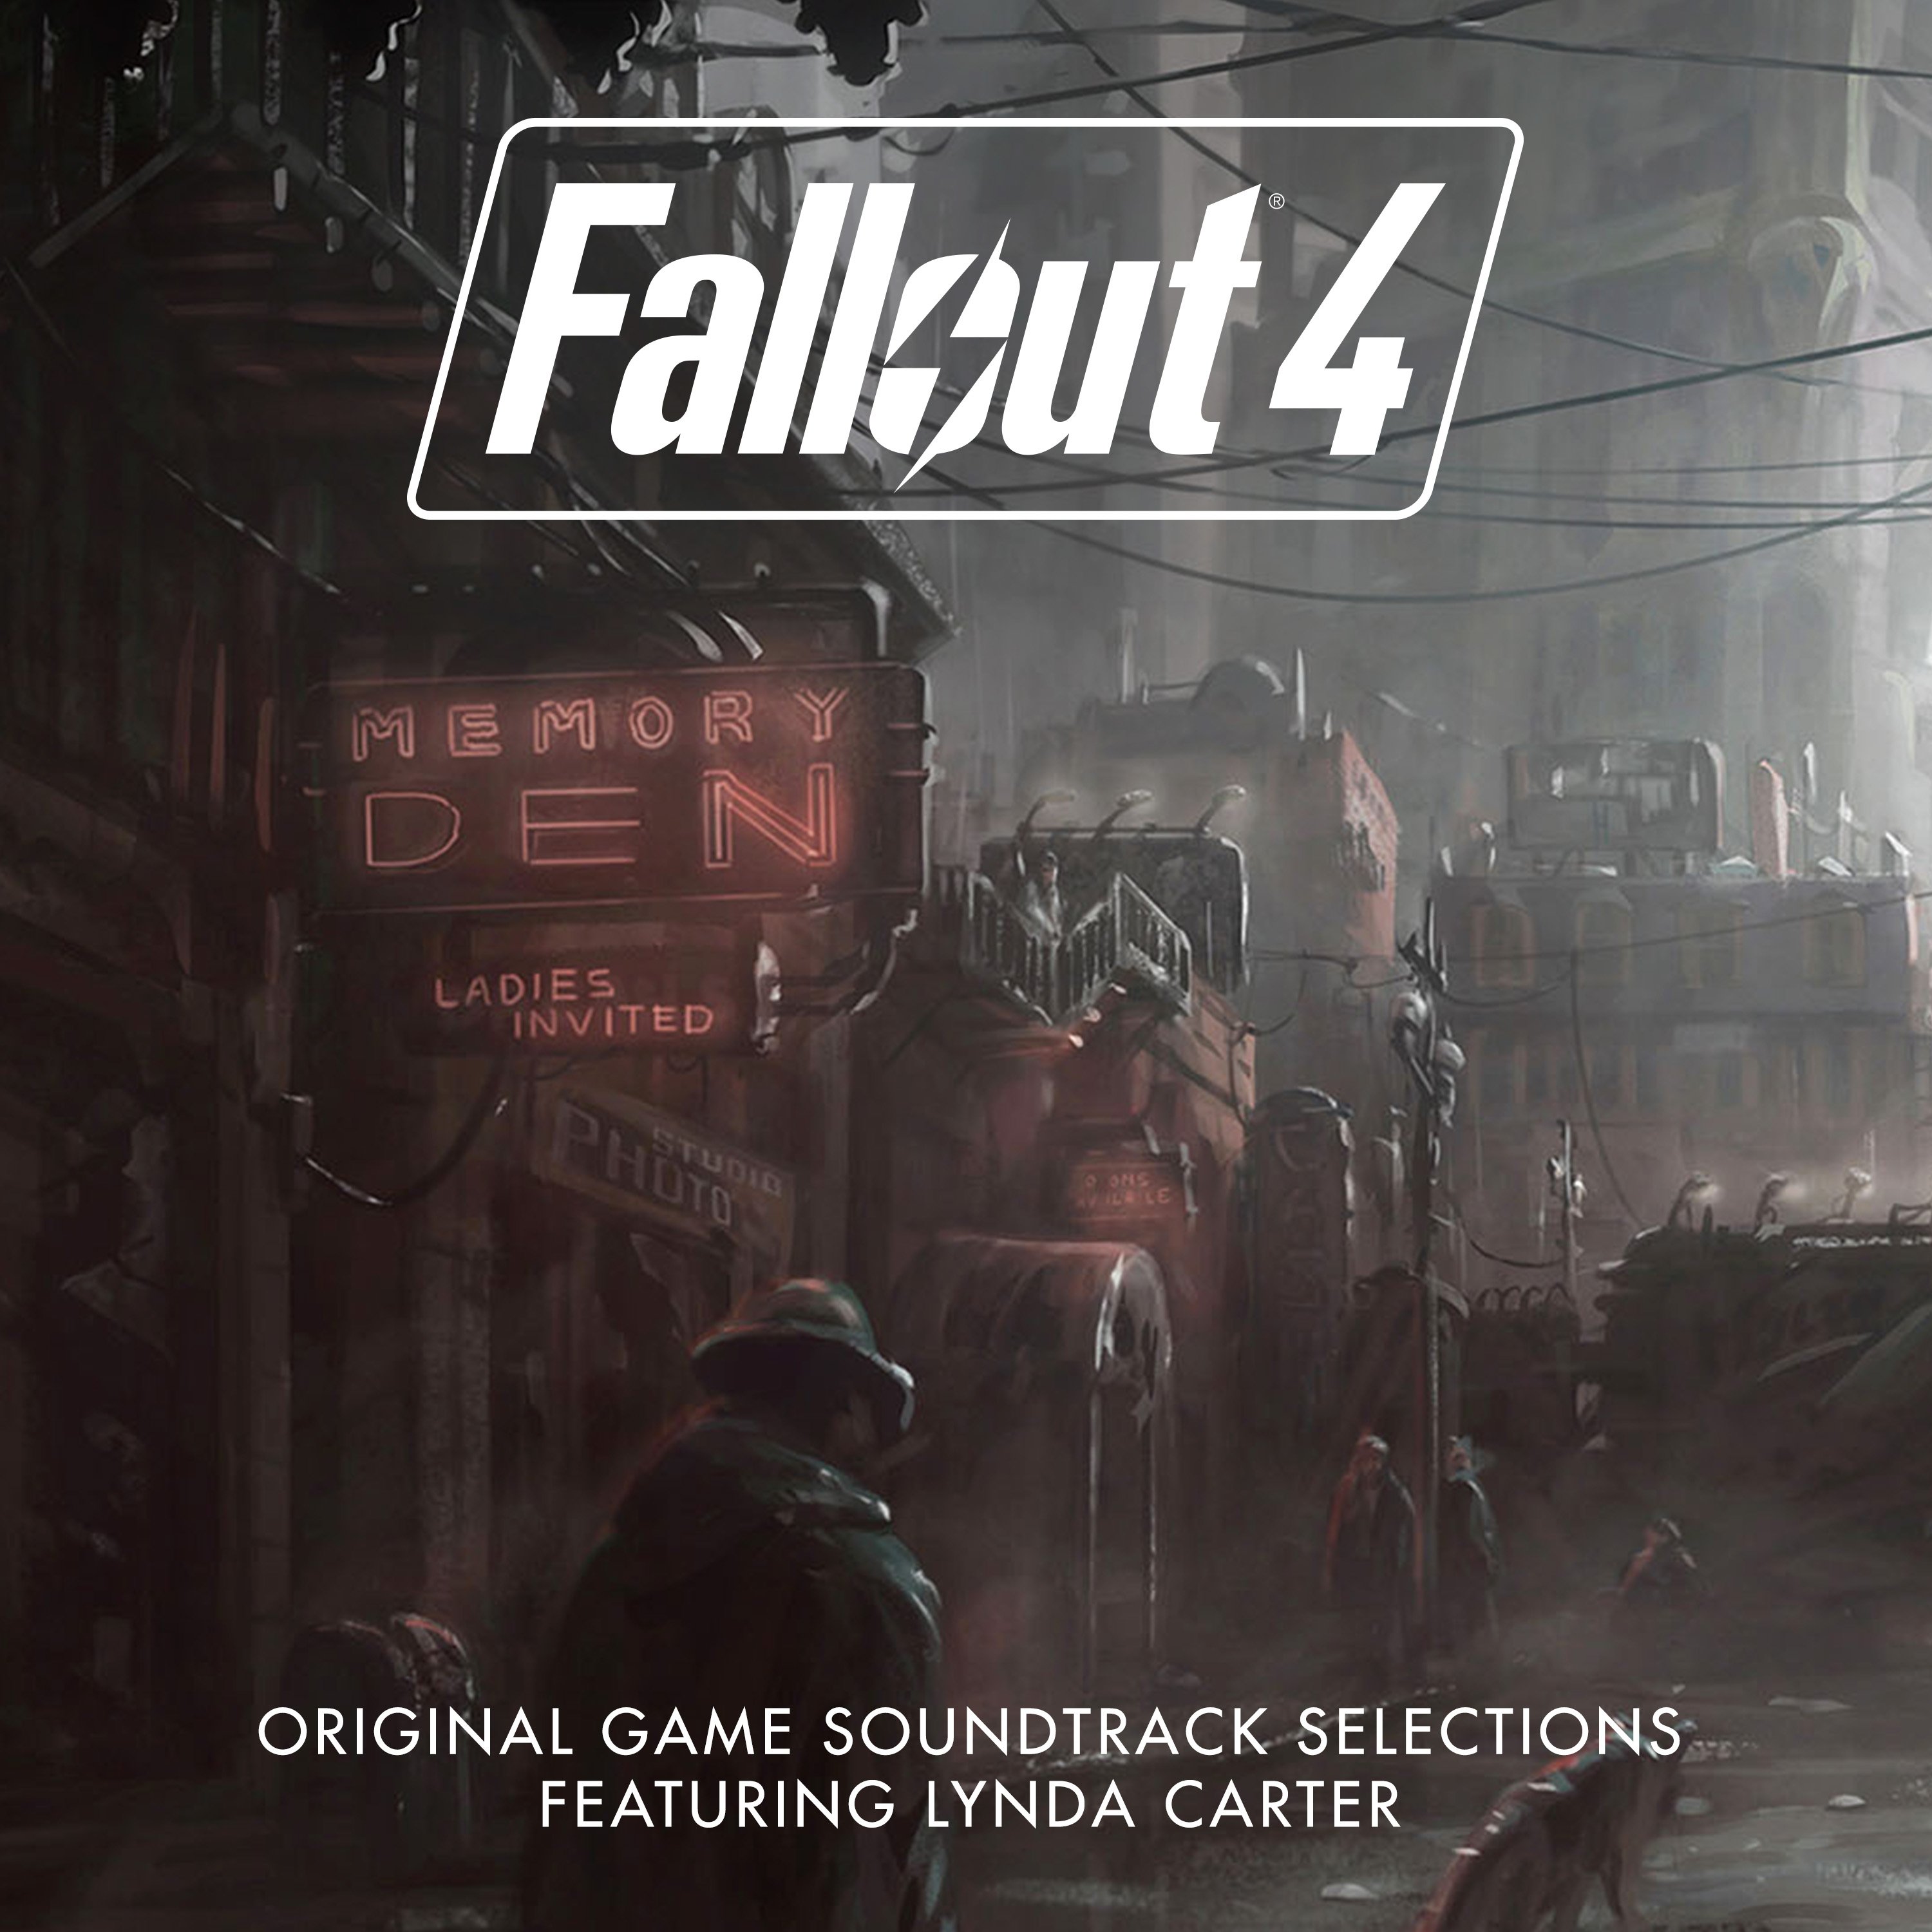 Fallout 4 песни радио даймонд сити фото 20